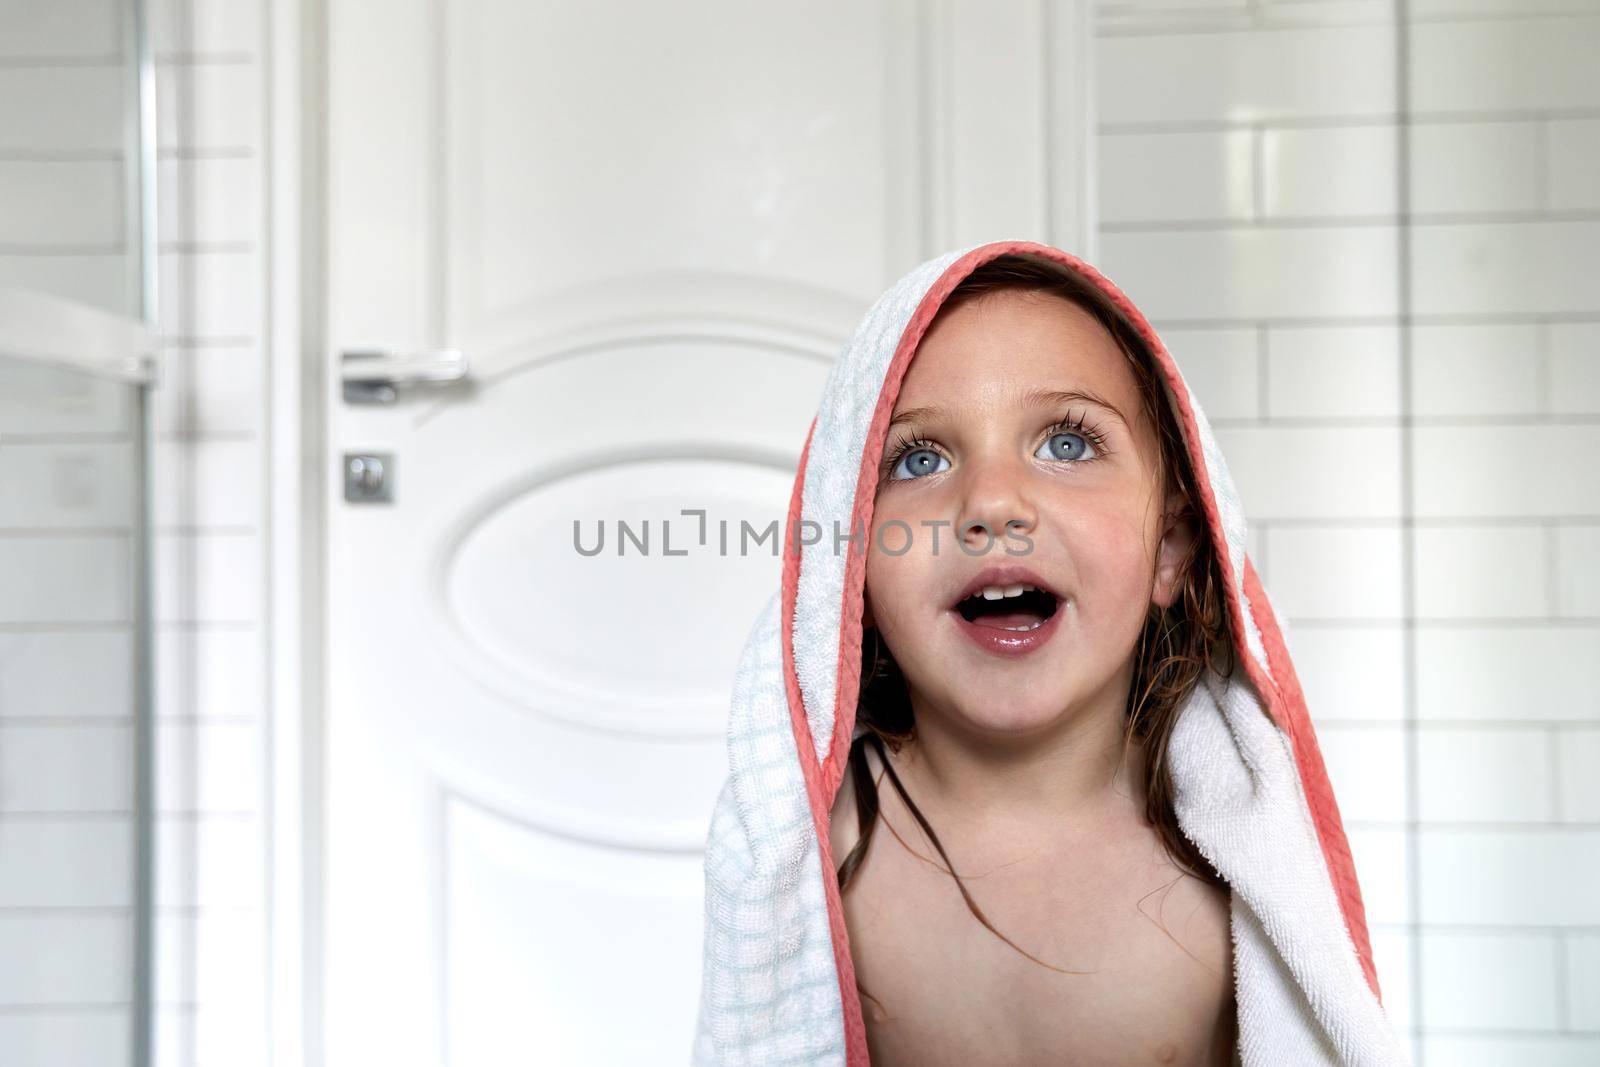 Cute naked girl in towel in bathroom by Demkat